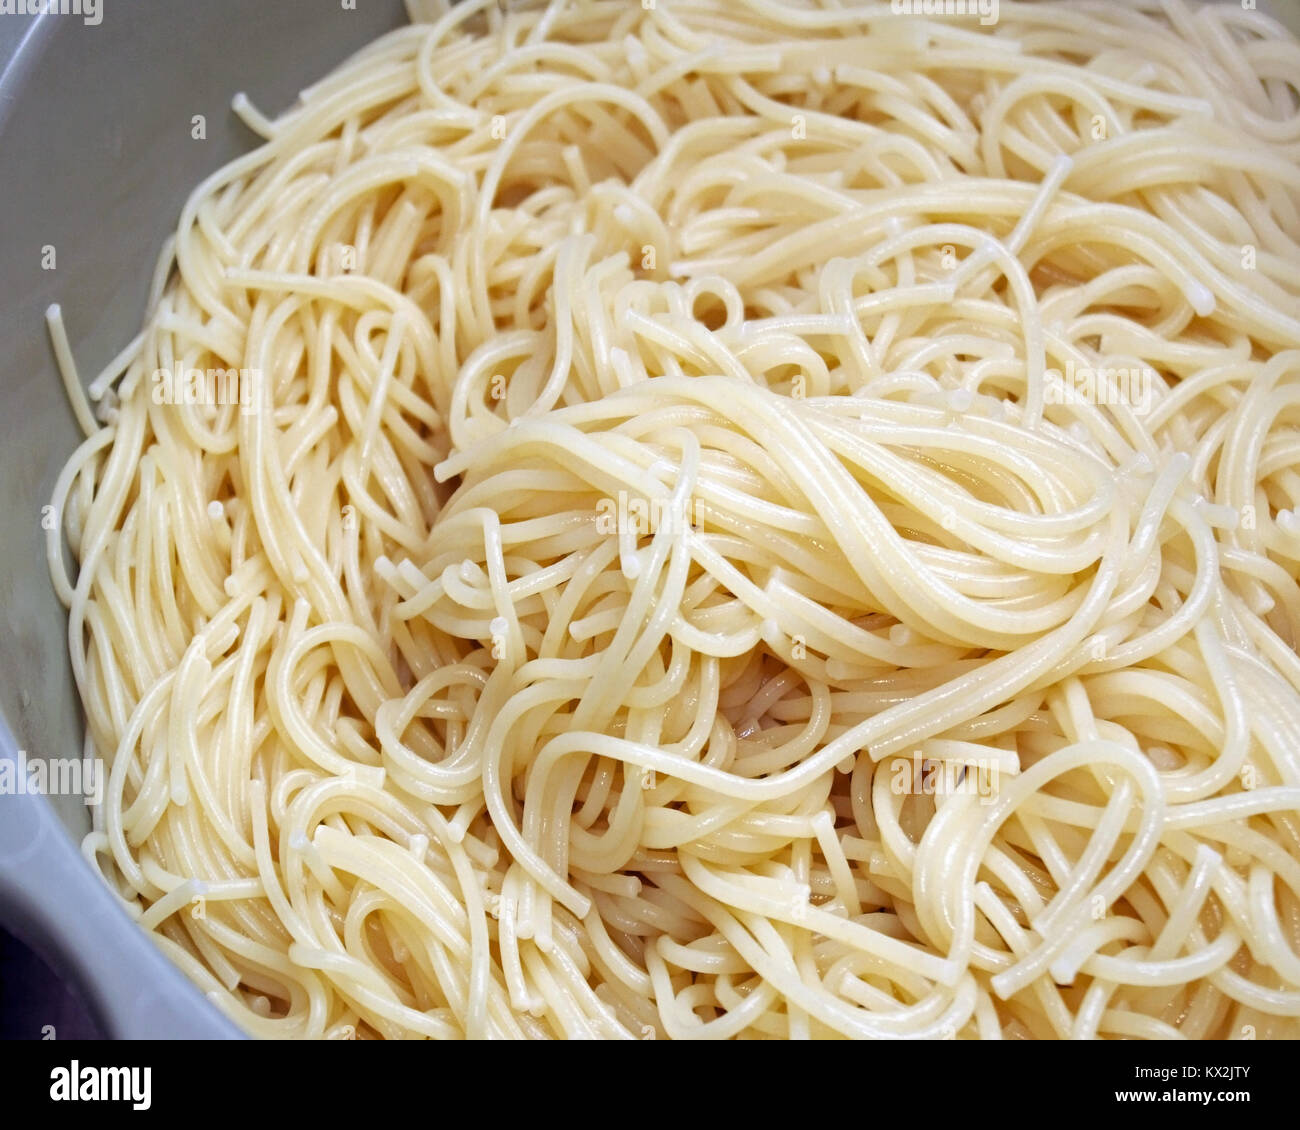 Des spaghettis cuits et égouttés dans une passoire Banque D'Images